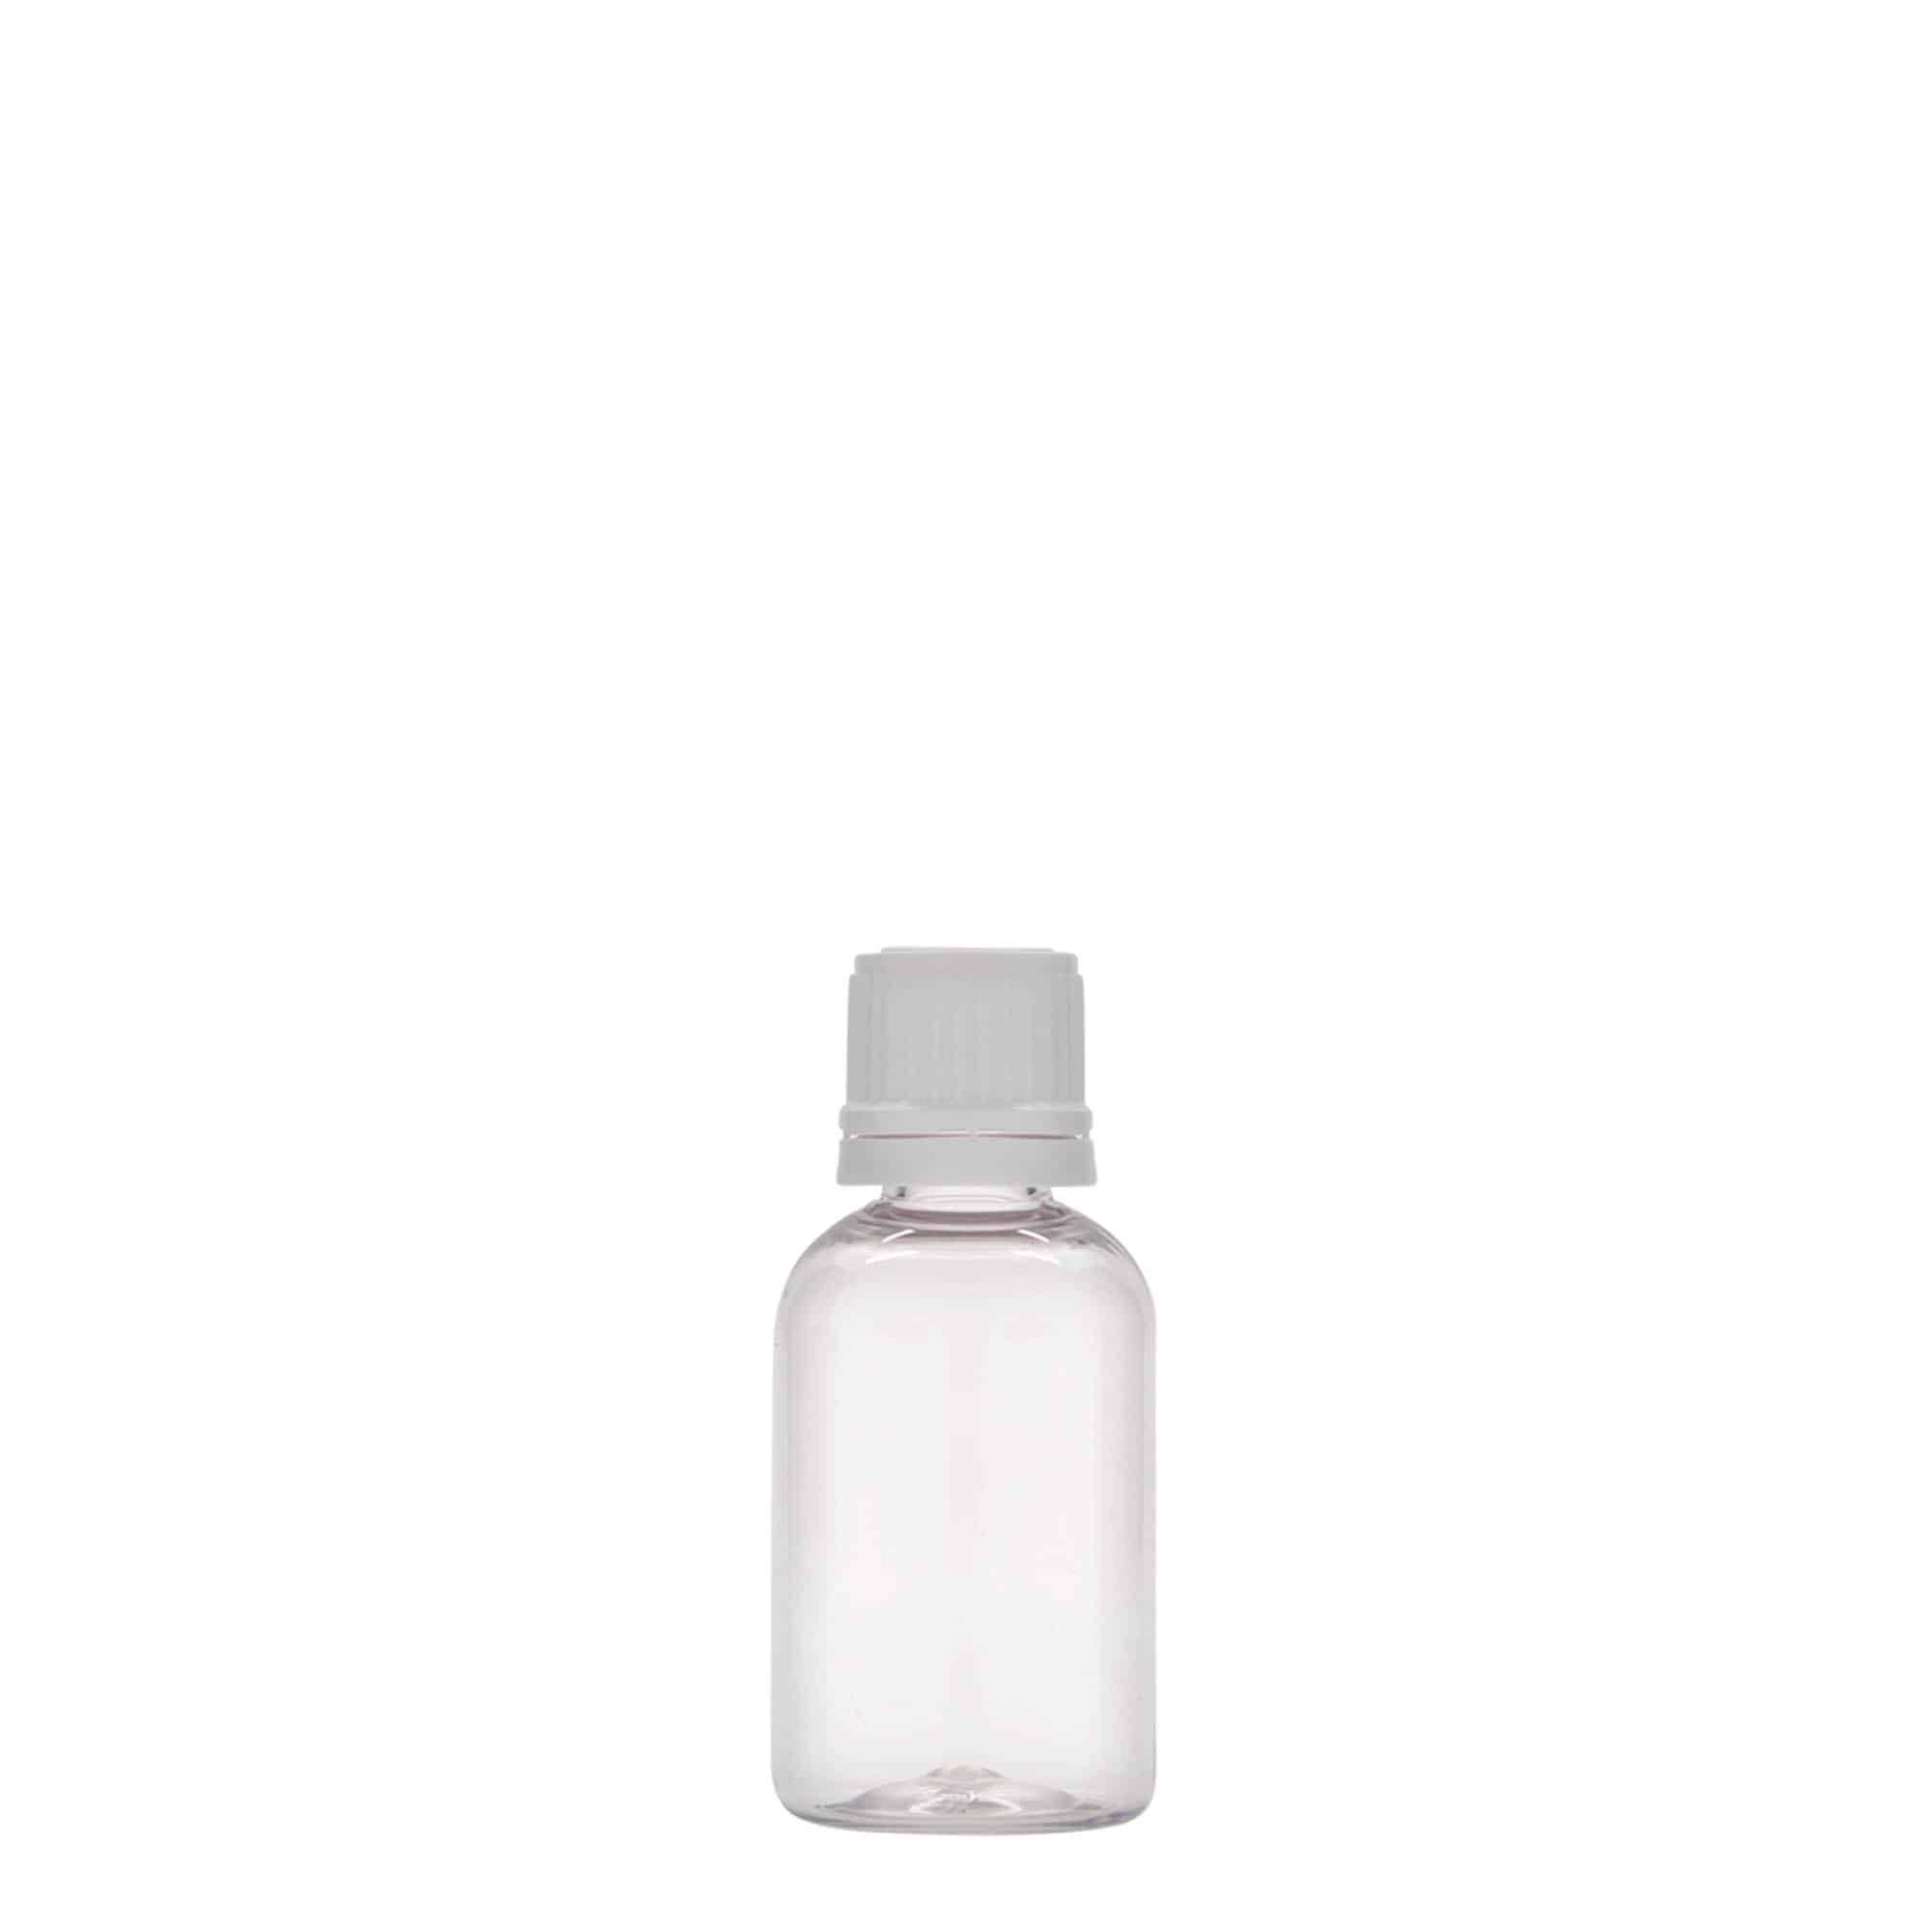 30 ml butelka farmaceutyczna PET 'Easy Living', tworzywo sztuczne, zamknięcie: DIN 18